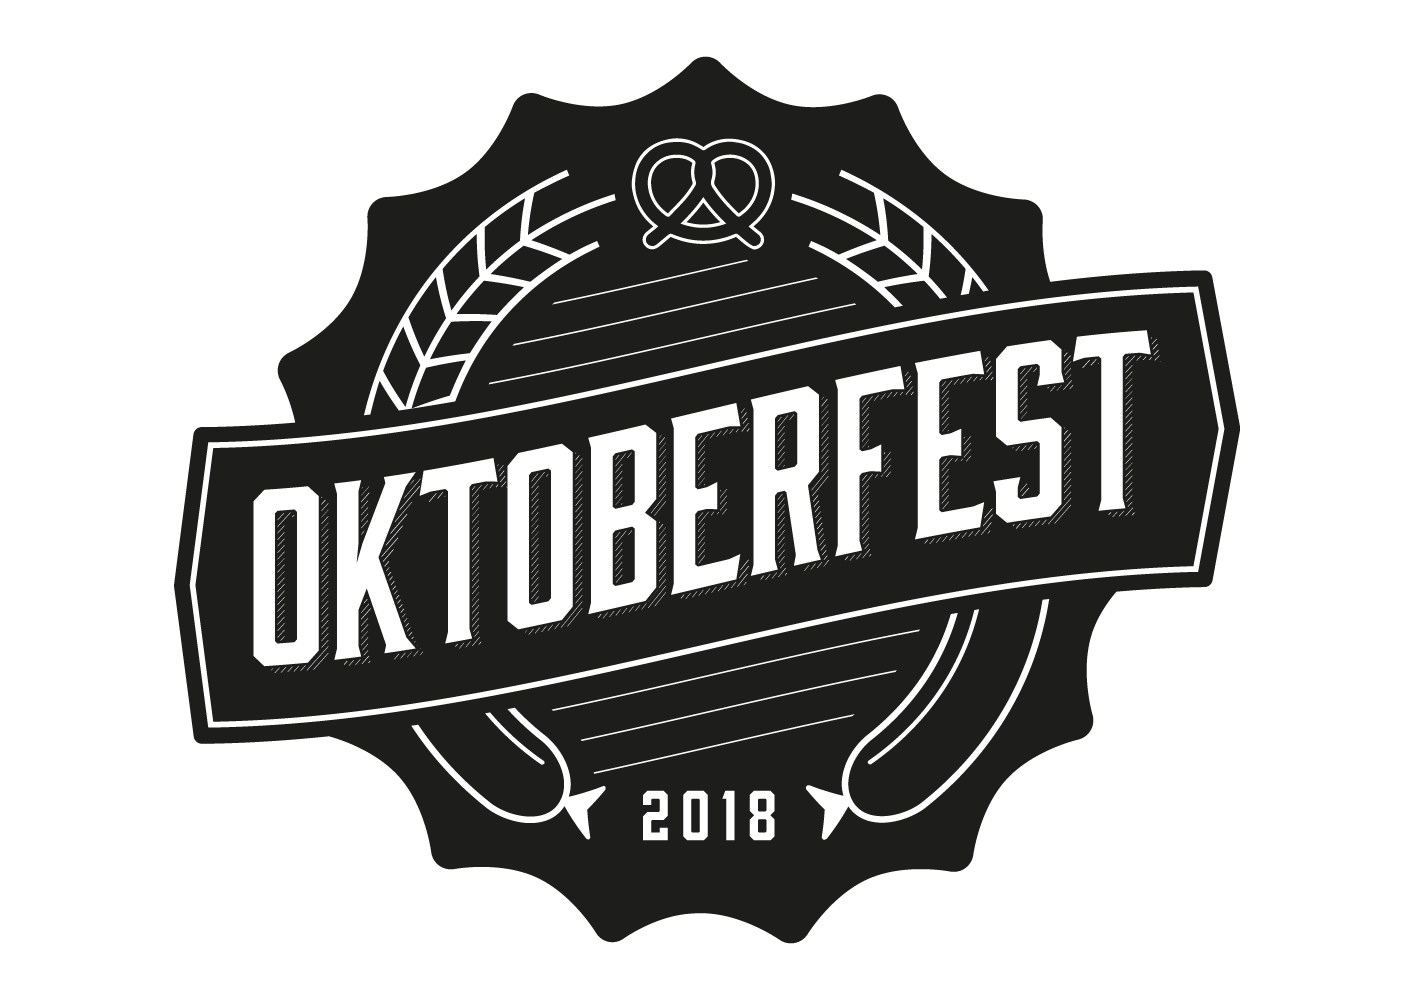 Oktoberfest Logo - Oktoberfest festival. Oktoberfest is hitting town for a weekend